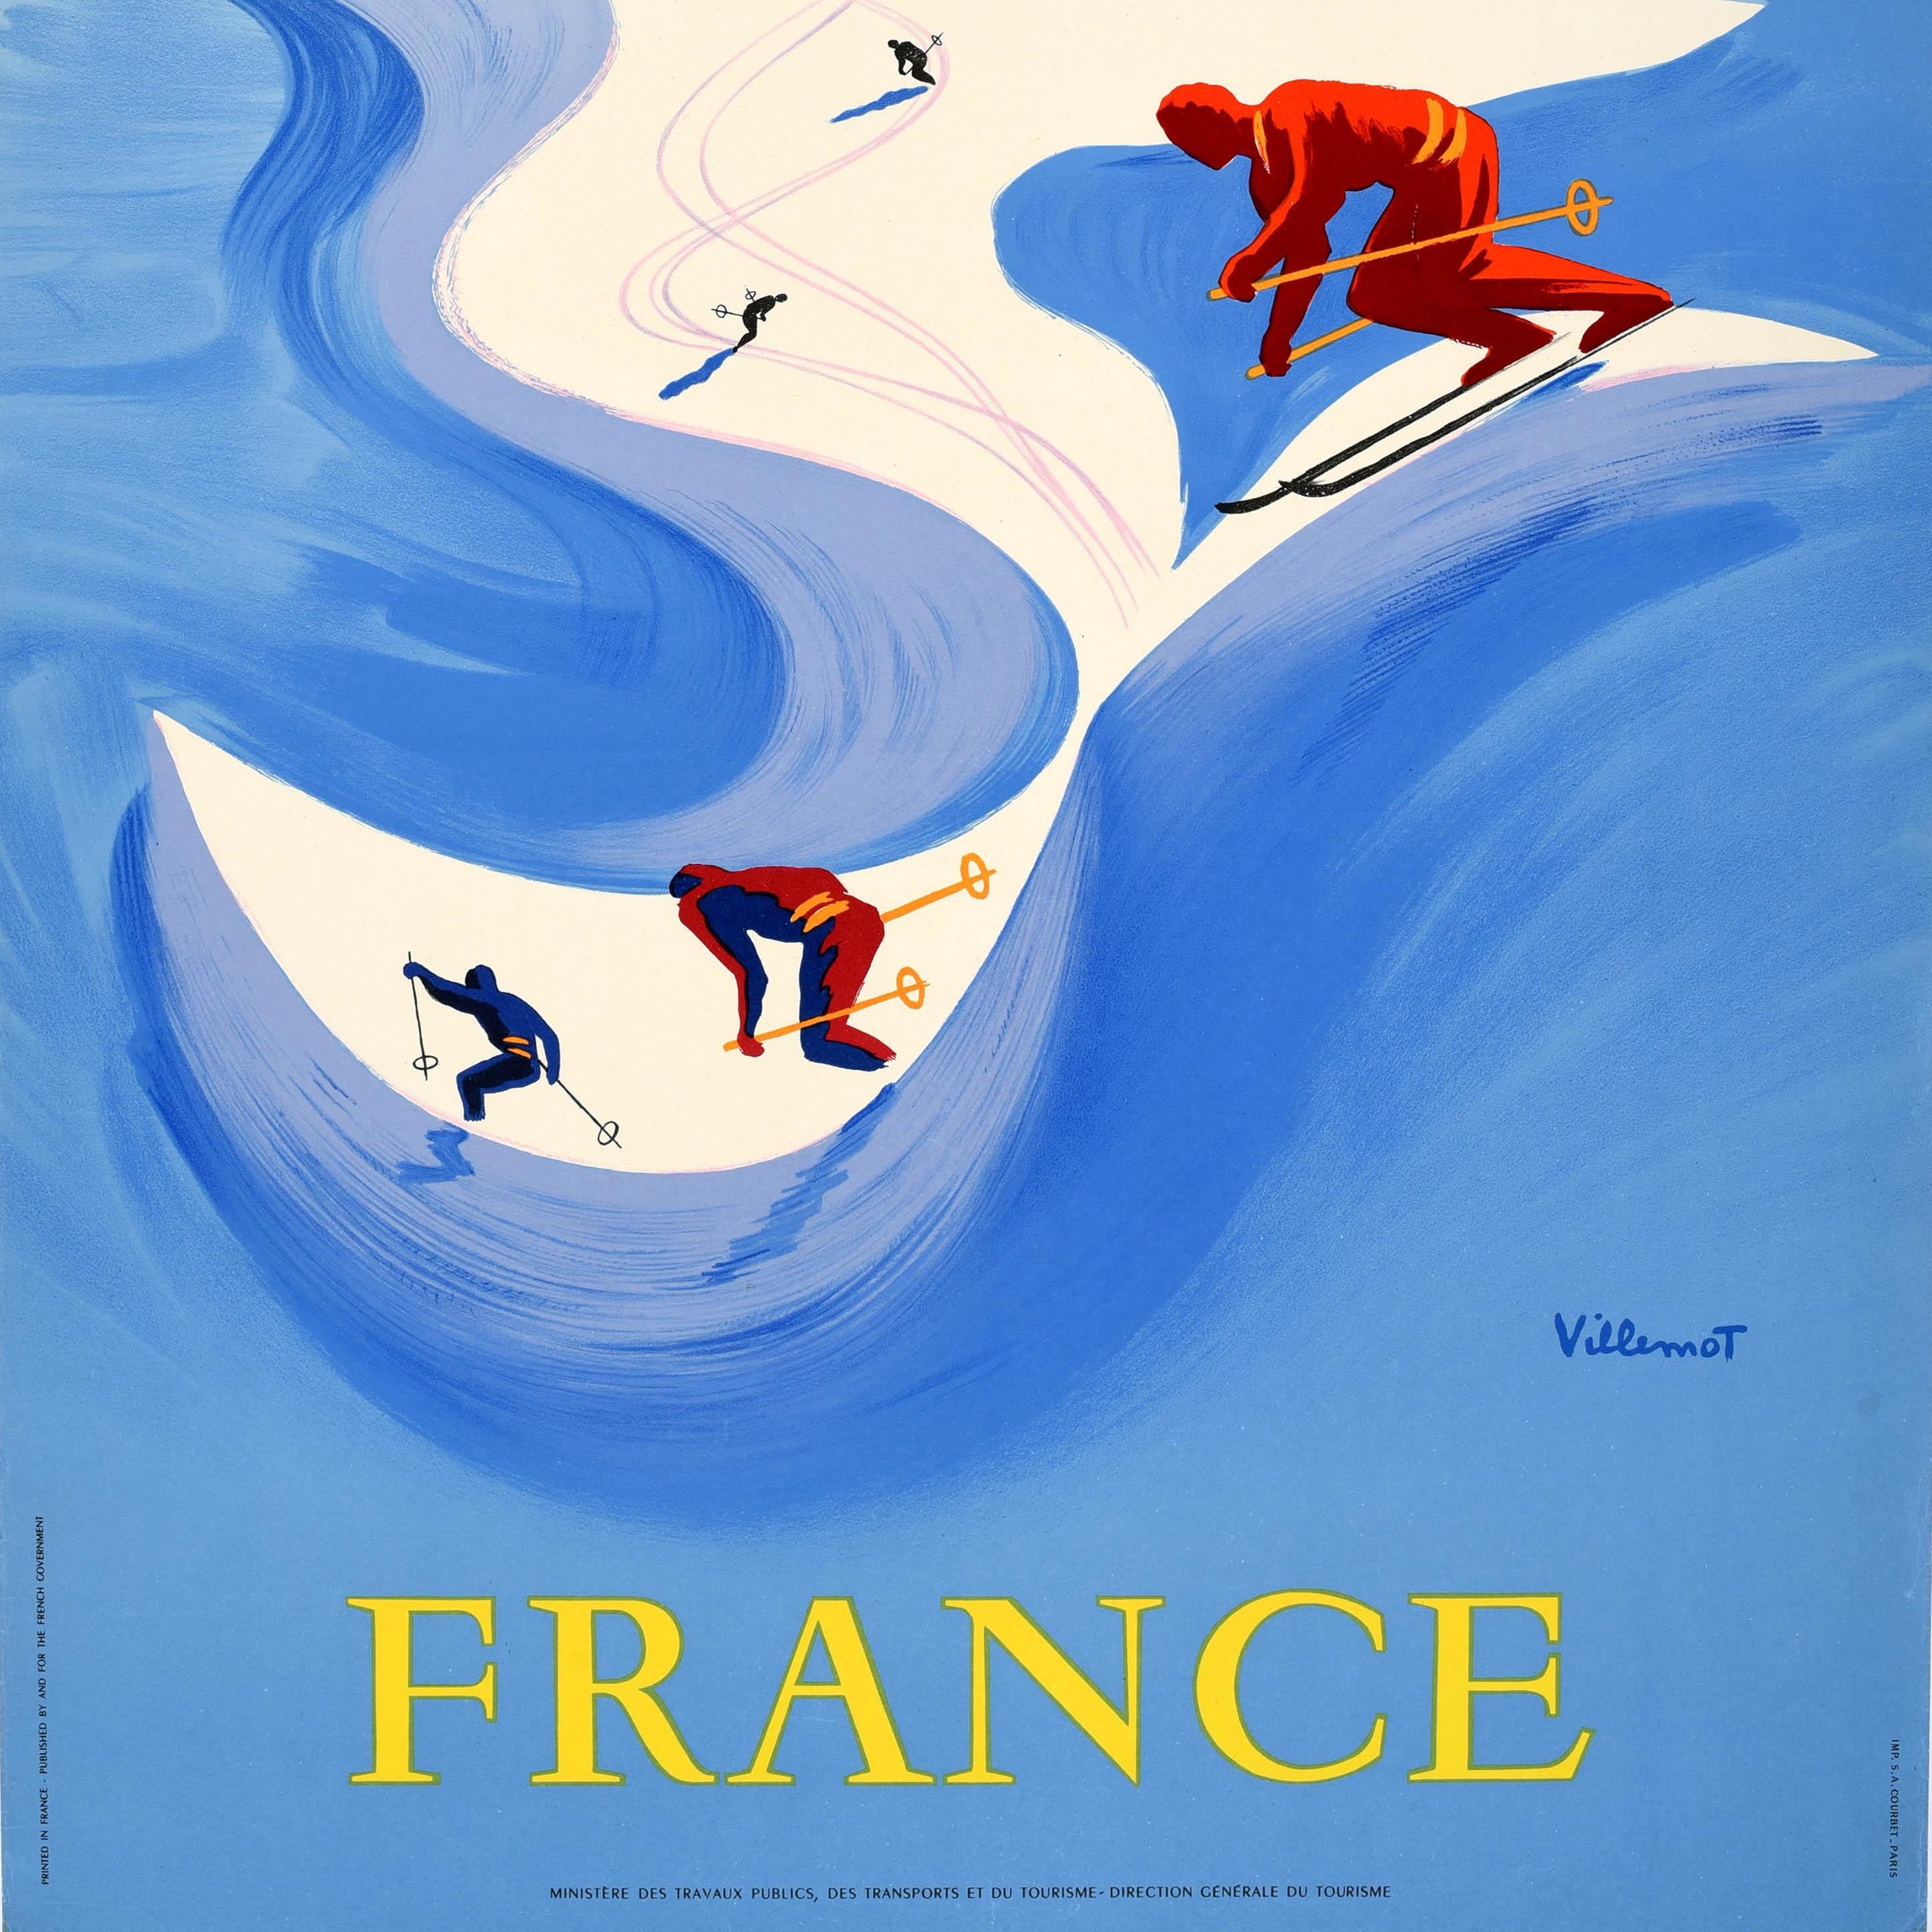 Original Vintage-Skireiseplakat - Winter Sports Fly Air France - mit farbenfrohen Motiven des bekannten Grafikers Bernard Villemot (1911-1989), die Skifahrer auf verschneiten Berghängen in Weiß- und Blautönen zeigen, die von einer stilisierten Sonne